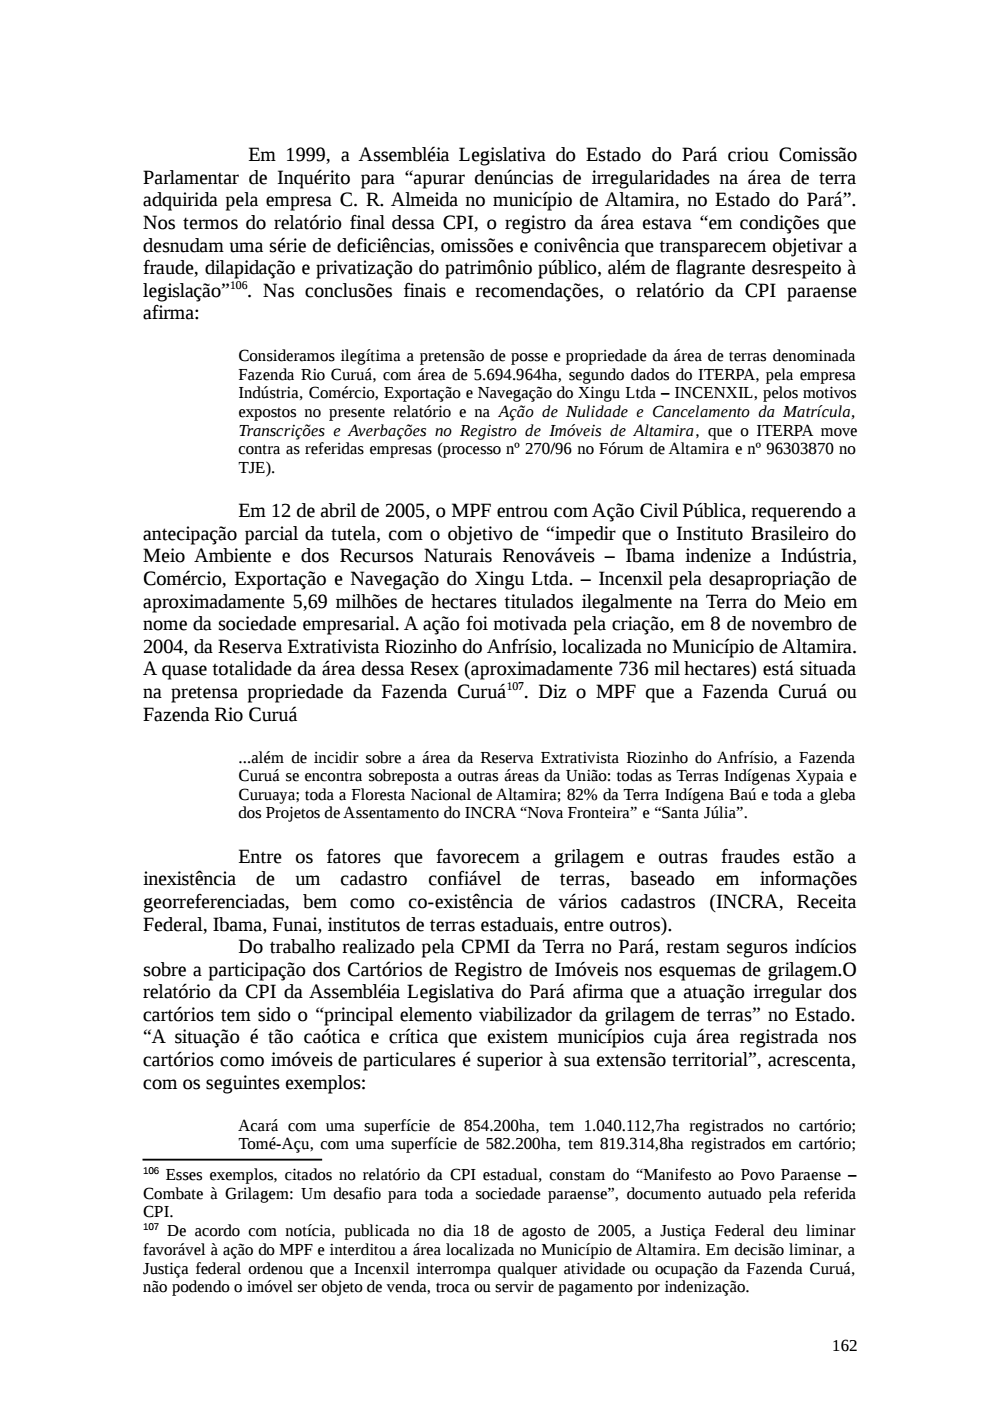 Page 162 from Relatório final da comissão